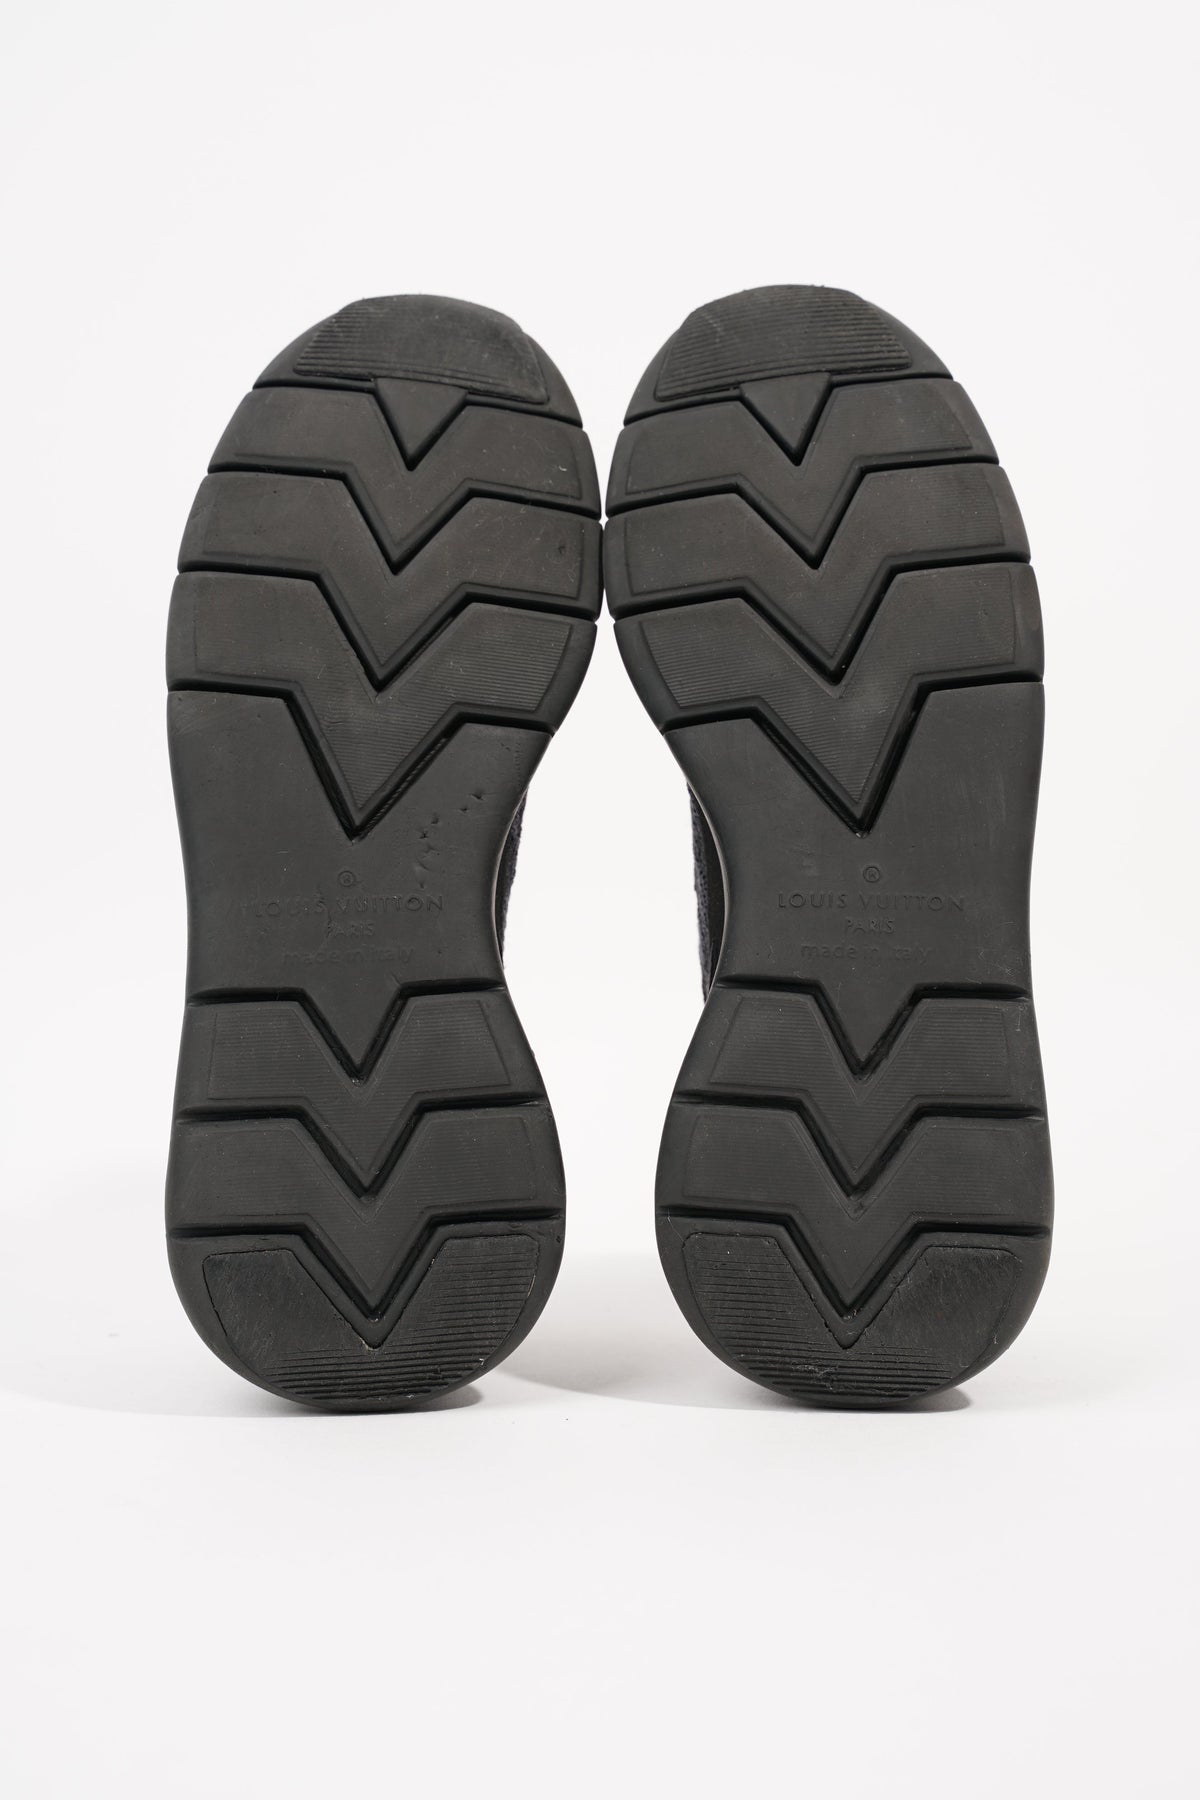 Louis Vuitton Mens Fastlane Sneaker Black Grey EU 40.5 / UK 7.5